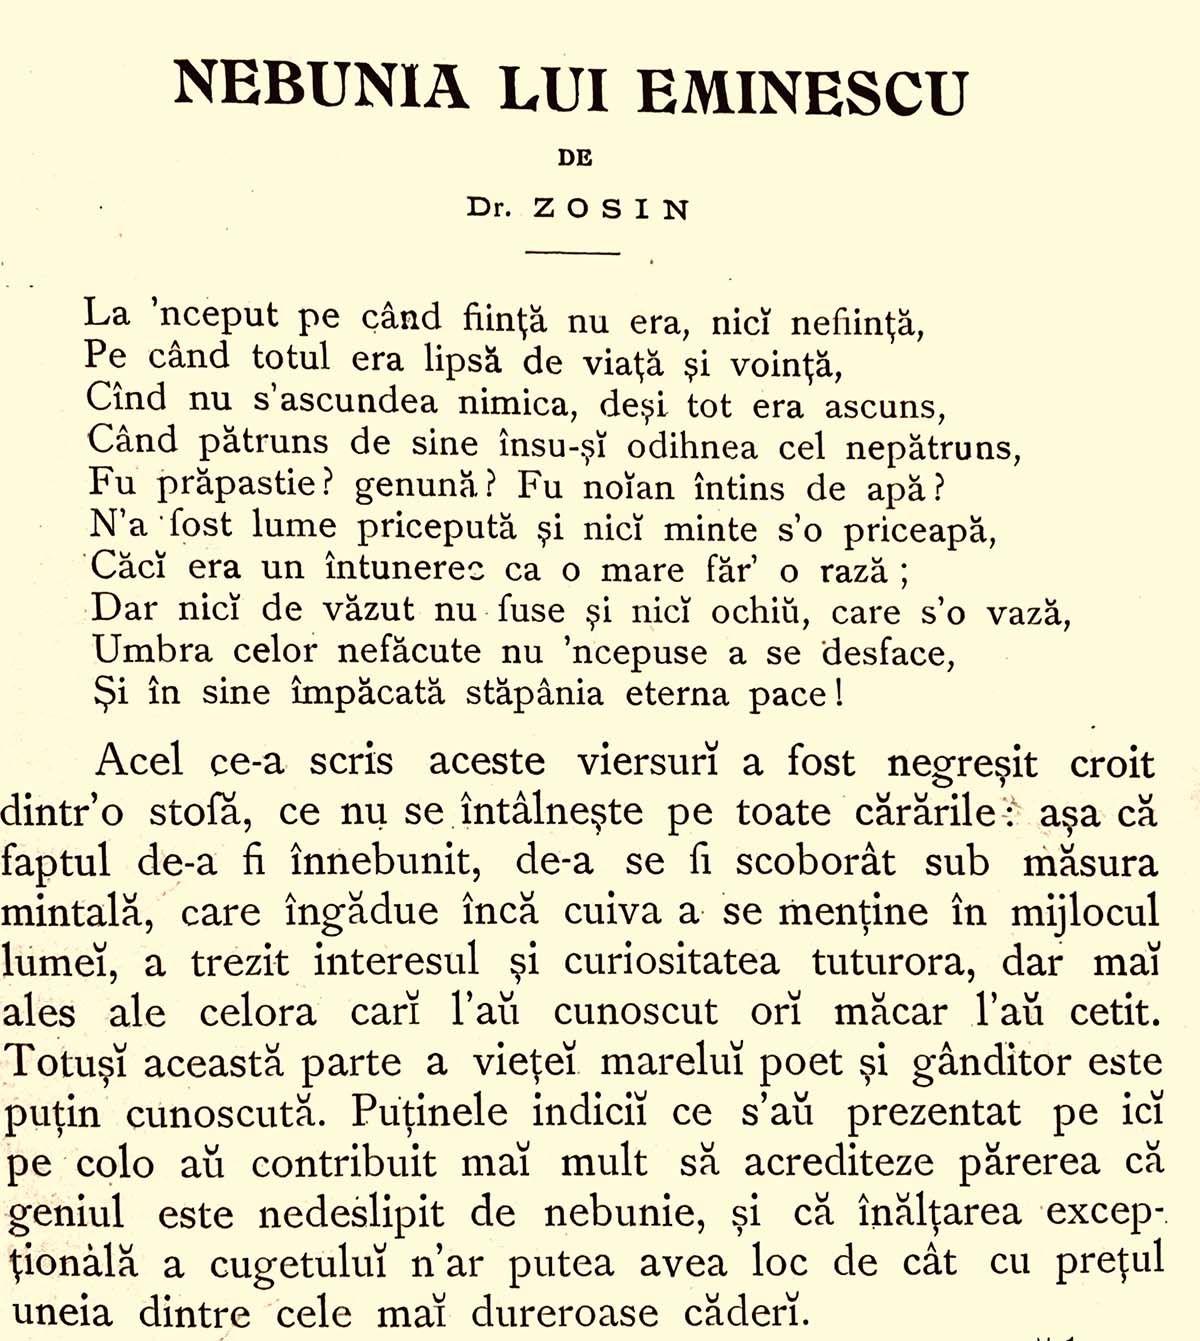 Nebunia lui Eminescu (fragment)